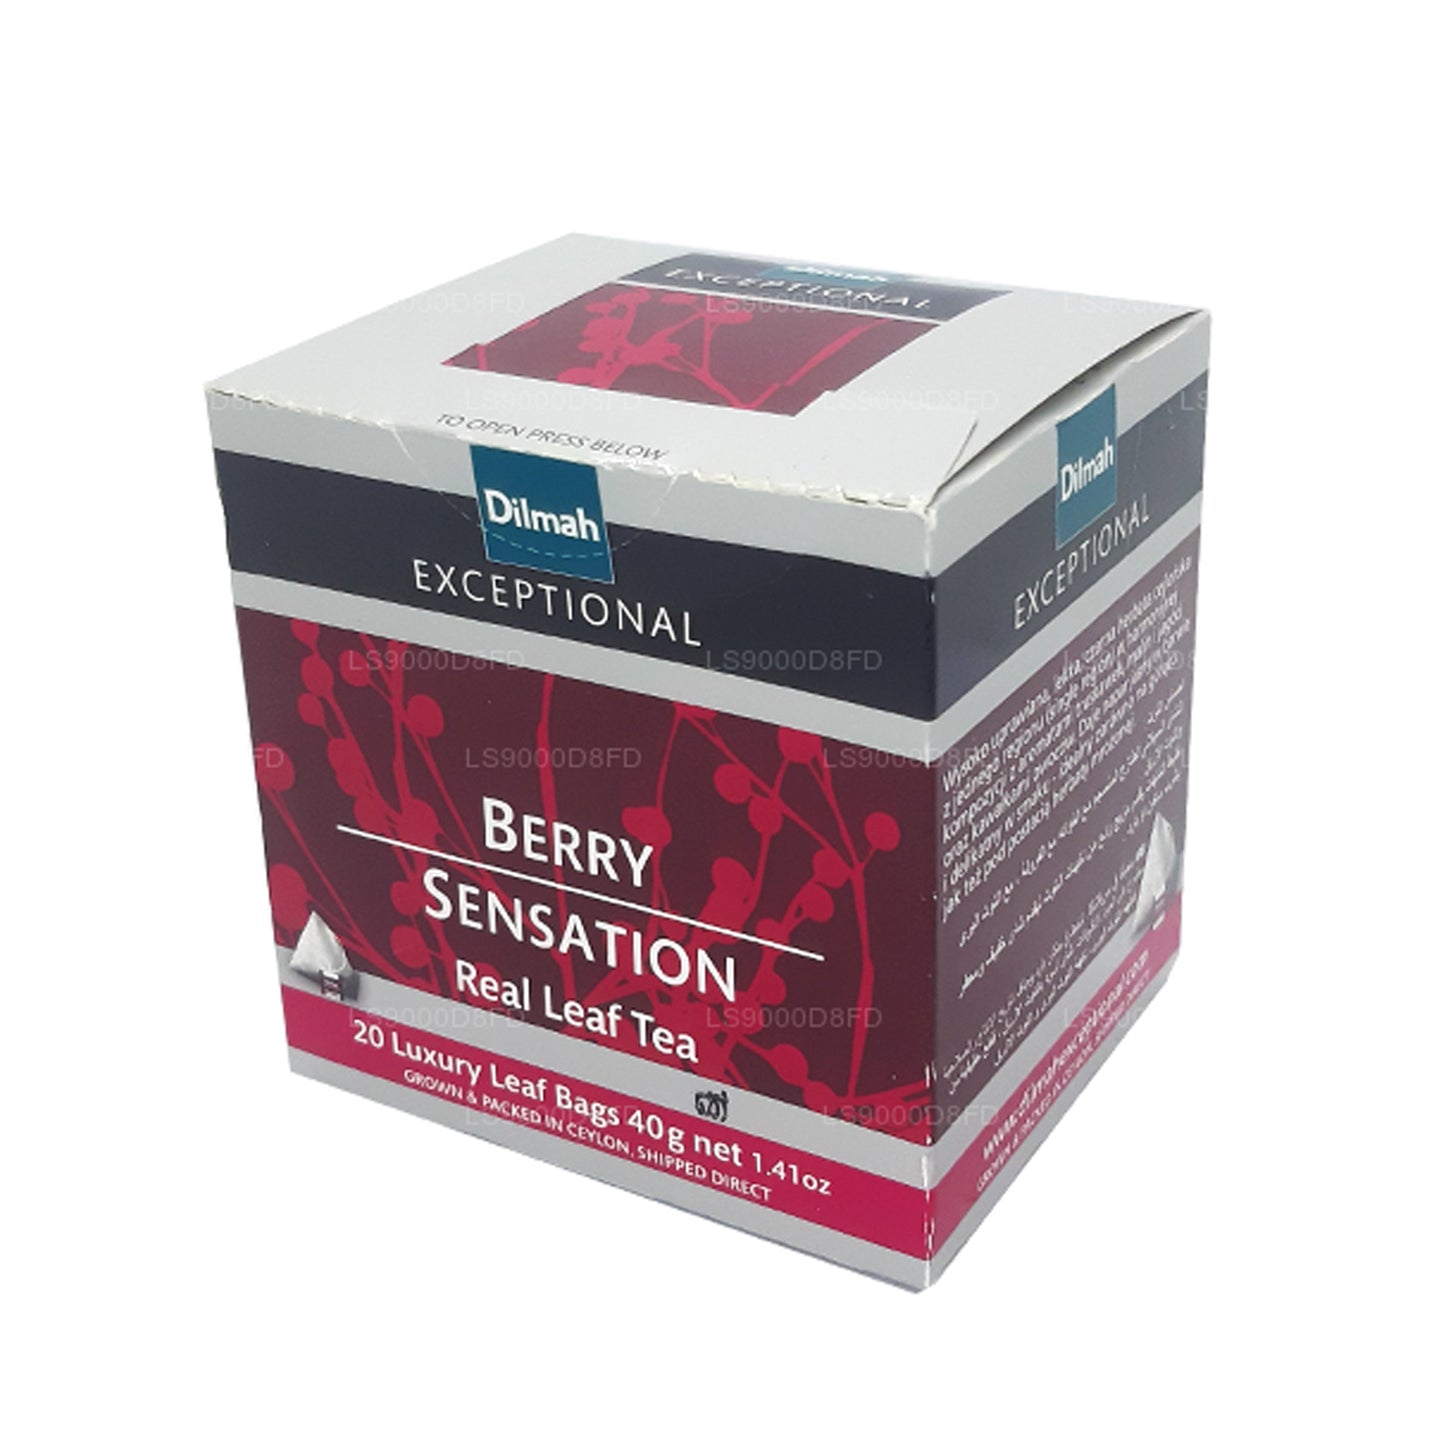 Té de hojas reales Dilmah Exceptional Berry Sensation (40 g) 20 bolsas de té